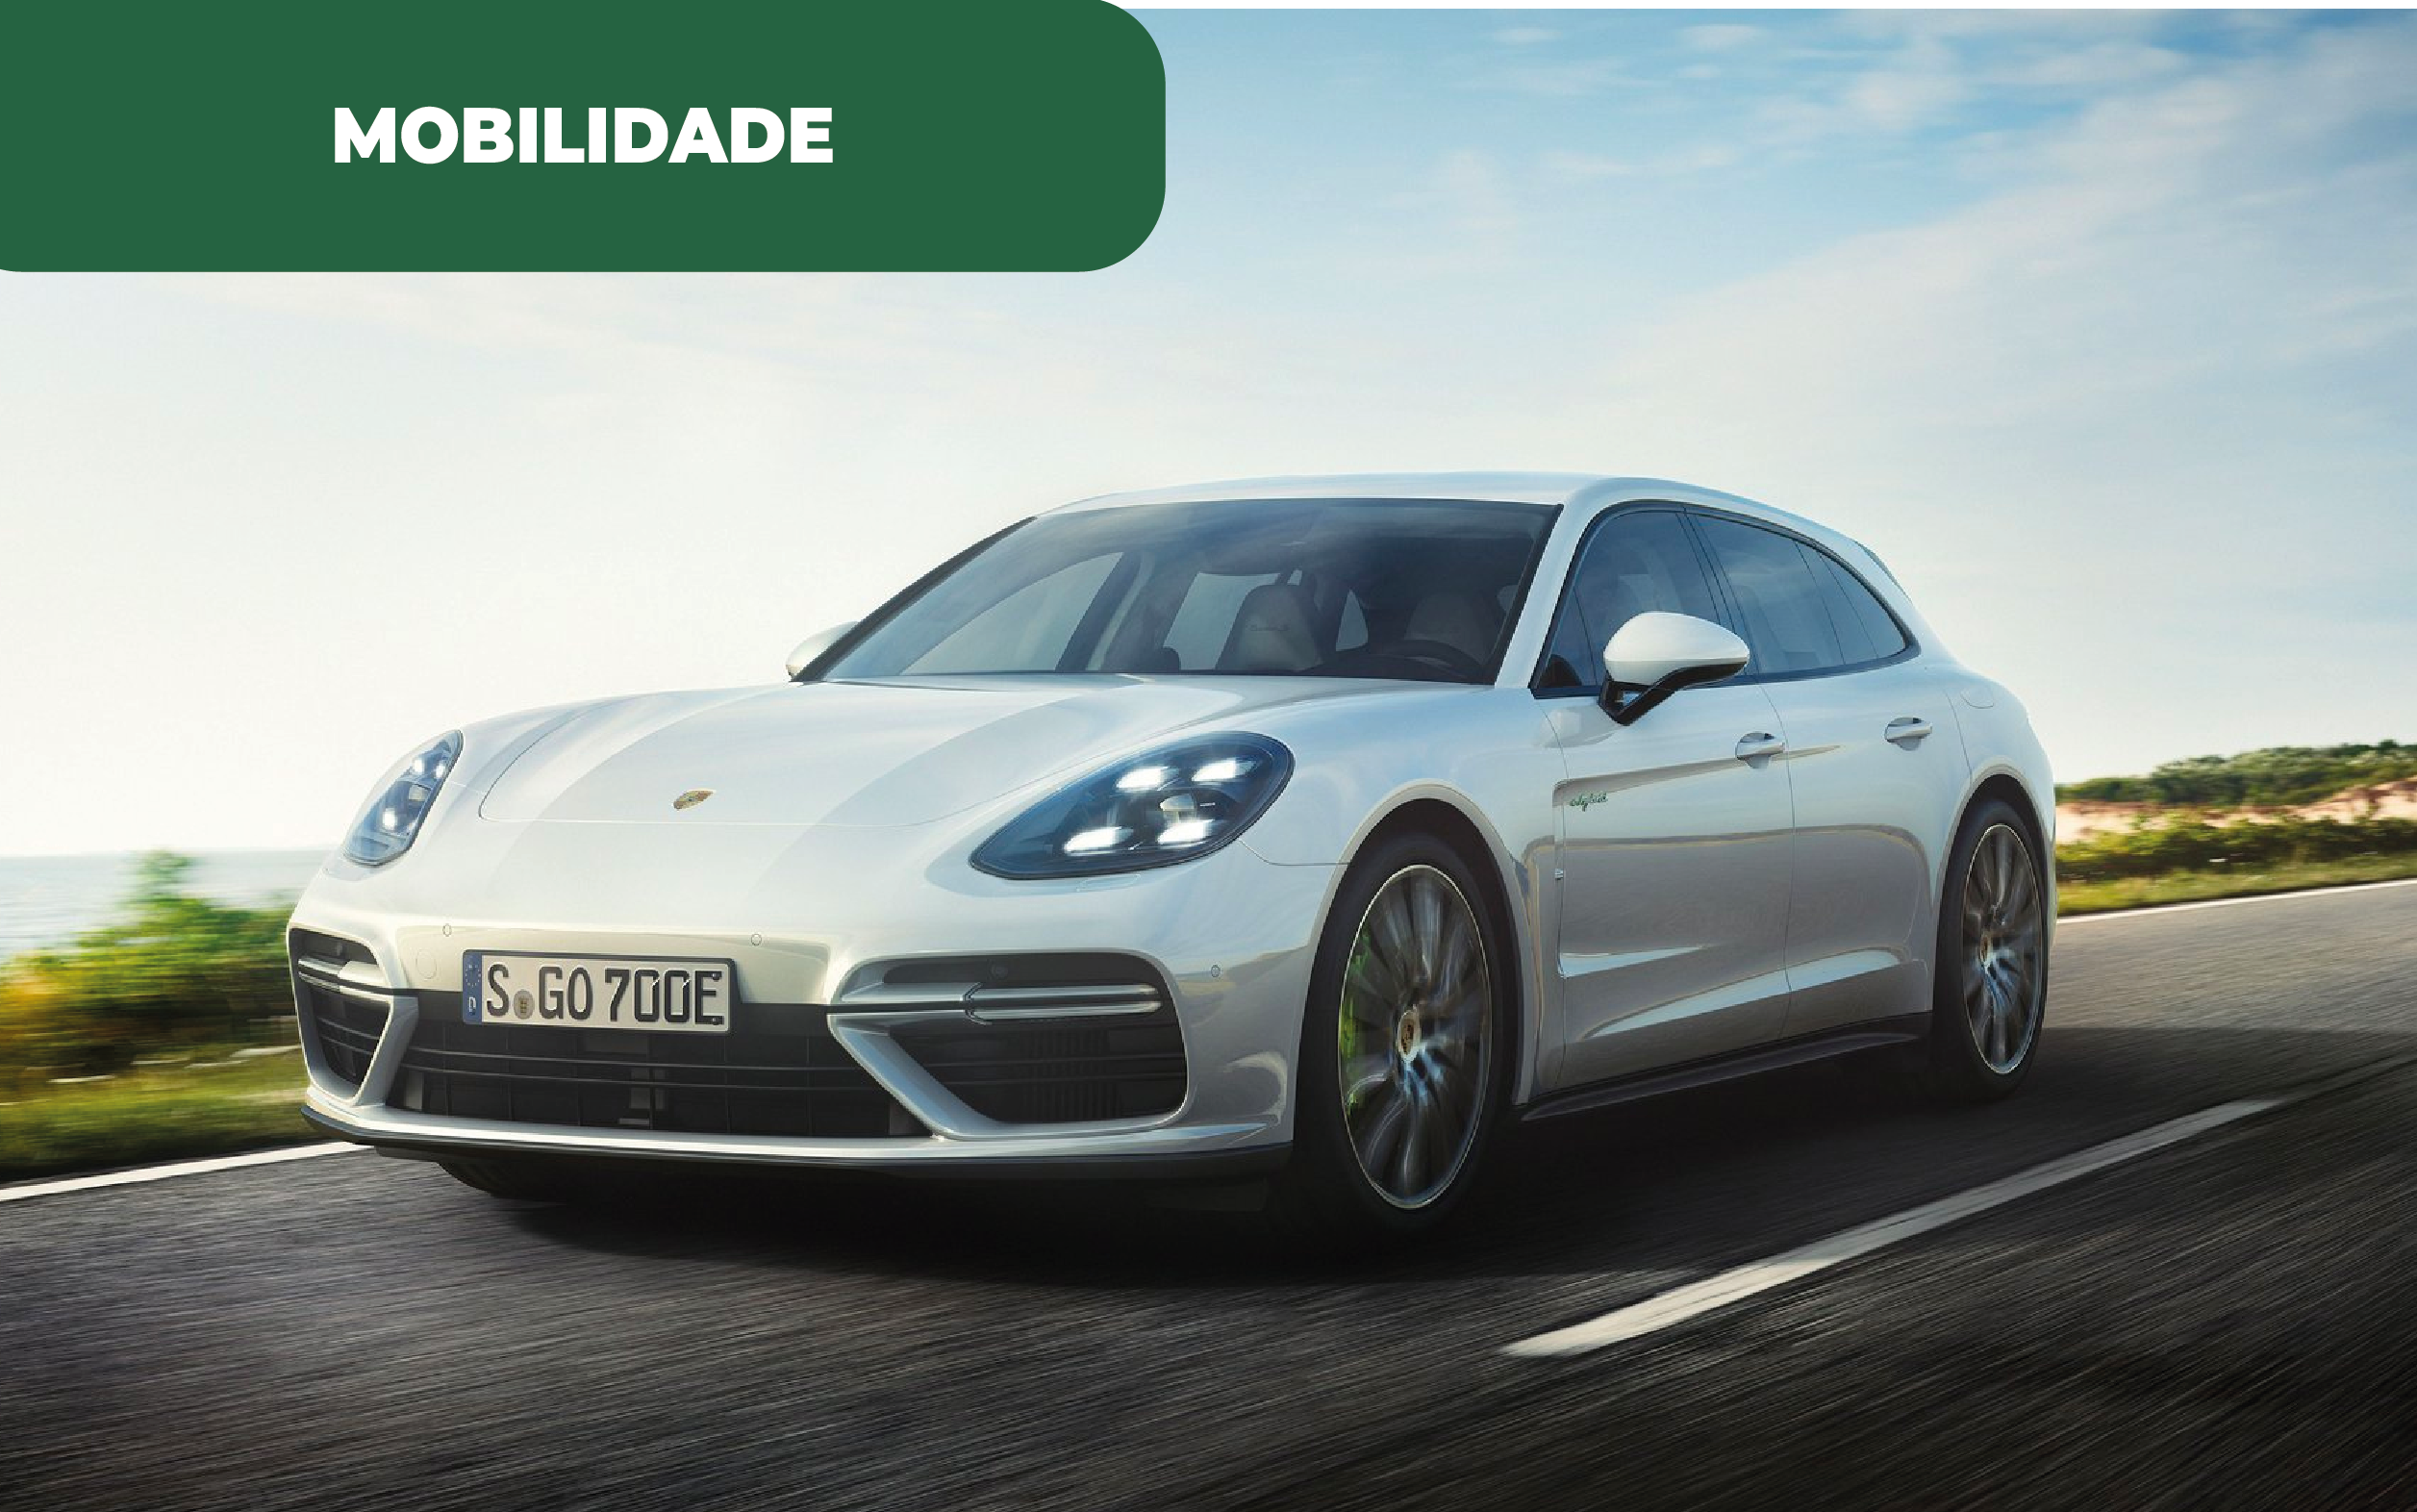 Imagem ilustrativa de automóvel da marca Porsche. A Porsche produz combustível sintético dando resposta à demanda e à transição energética.